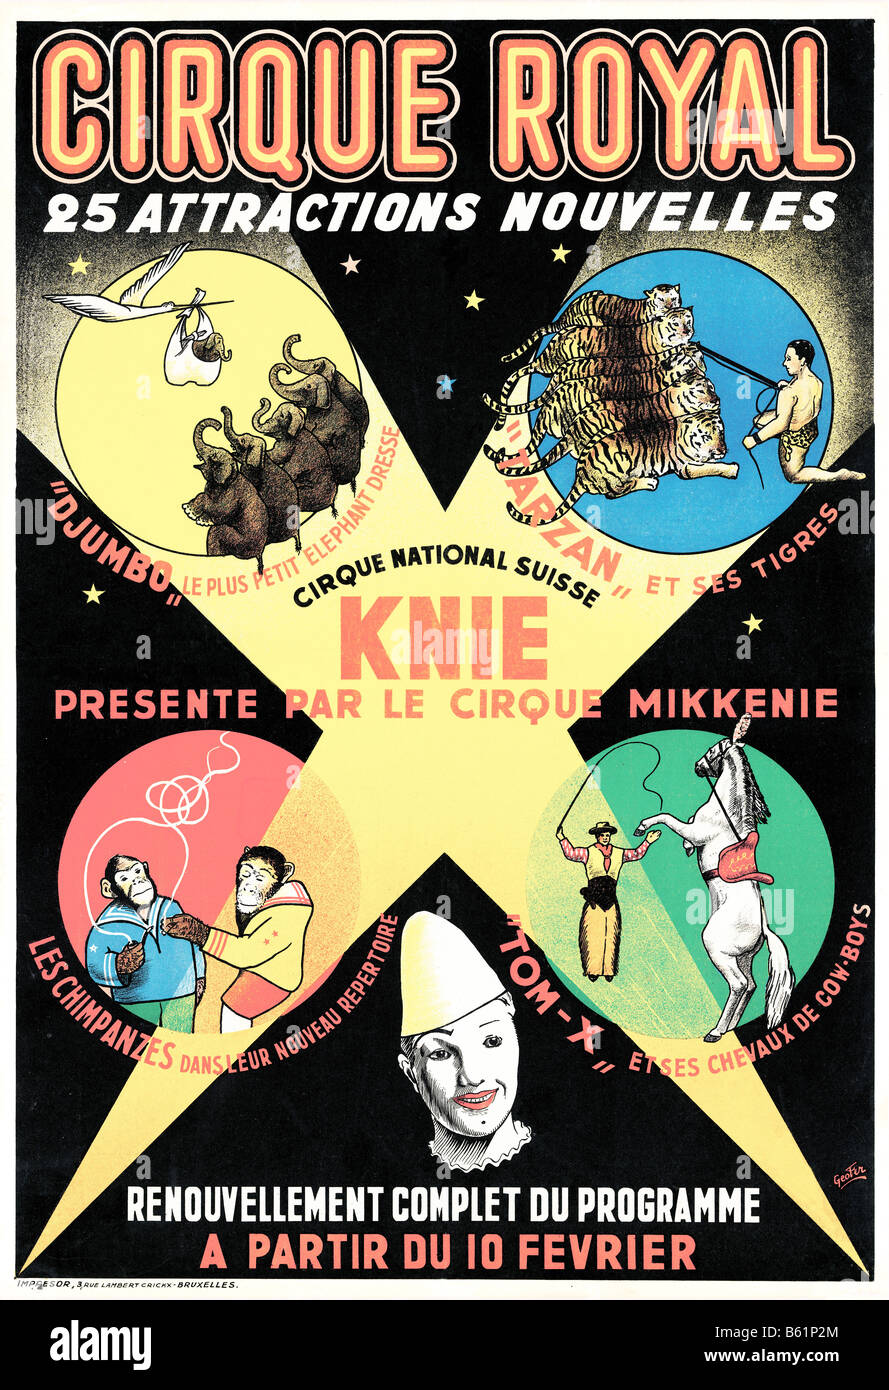 Cirque Royal 1950 affiche pour le cirque belge voyageant avec 25 nouvelles lois Banque D'Images